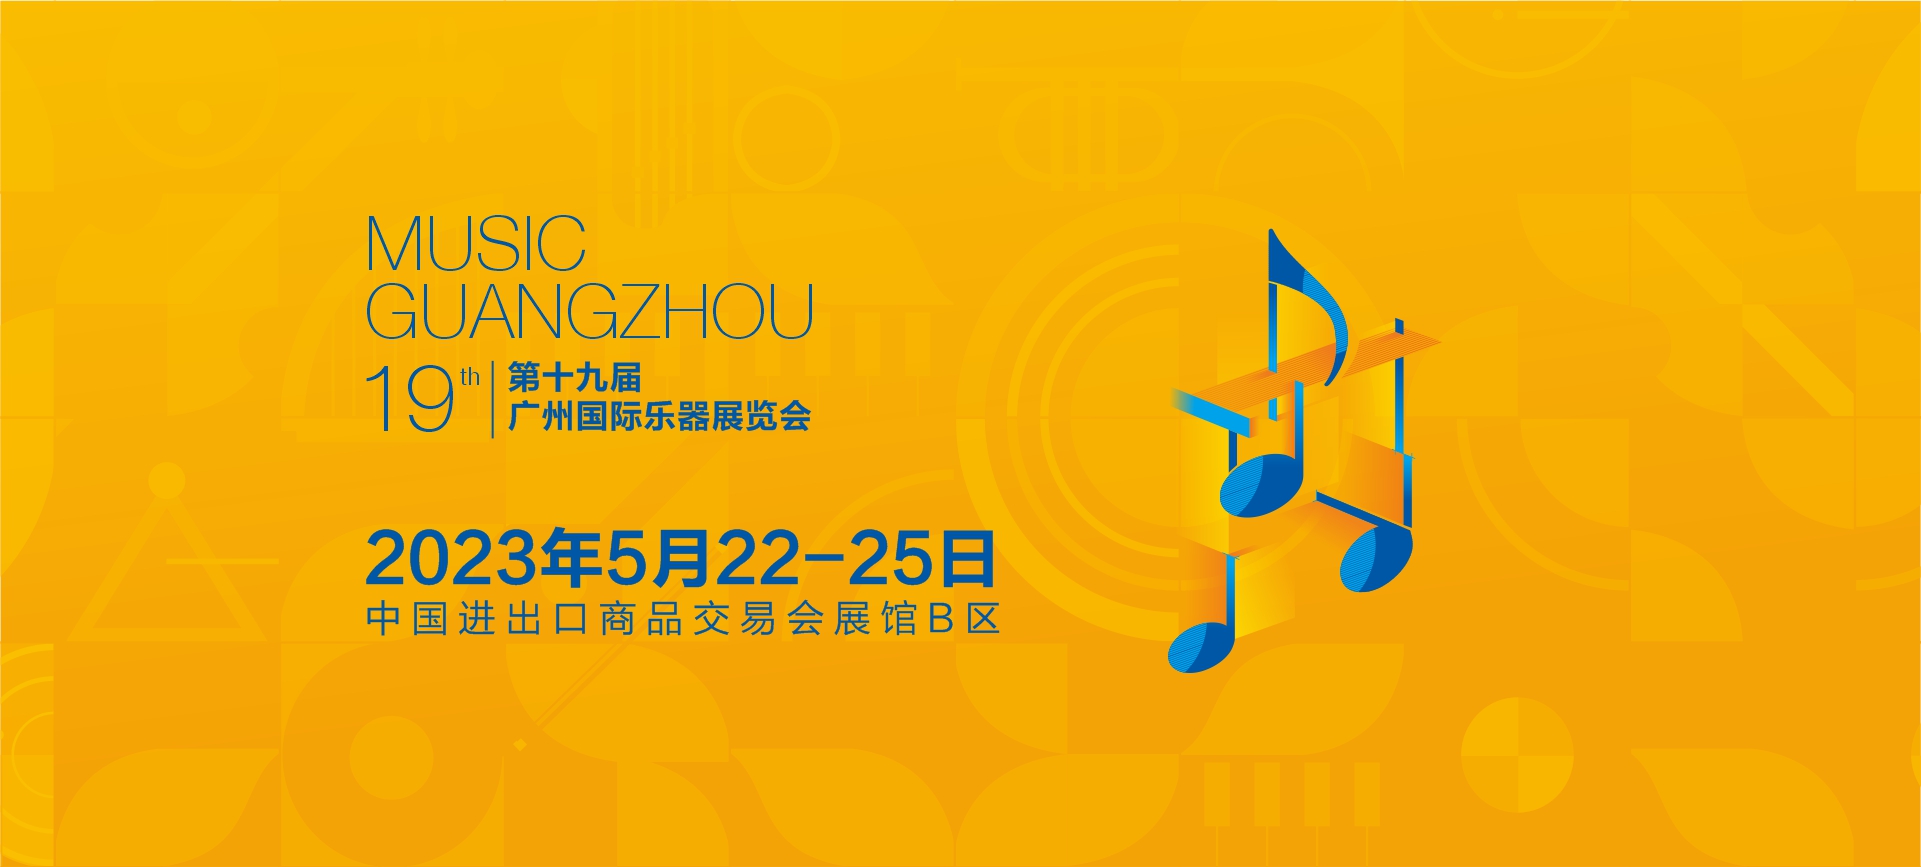 music guangzhou